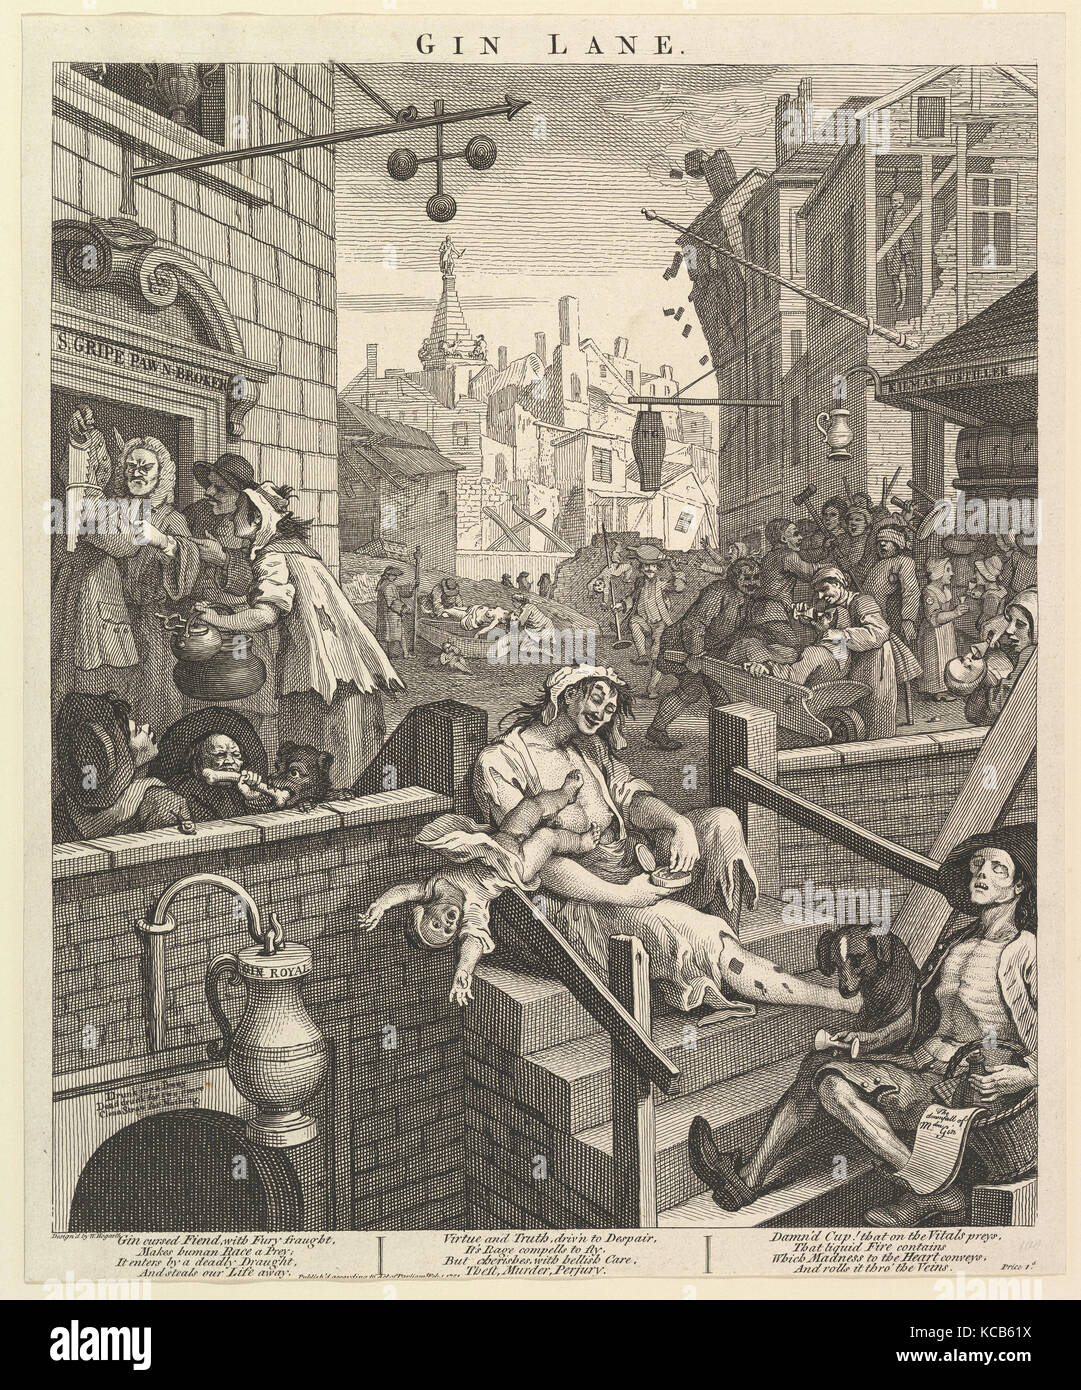 Gin Lane, le 1 février 1751, la gravure ; troisième état de trois, feuille : 15 1/16 x 12 1/2 in. (38,3 x 31,7 cm), d'impressions Banque D'Images